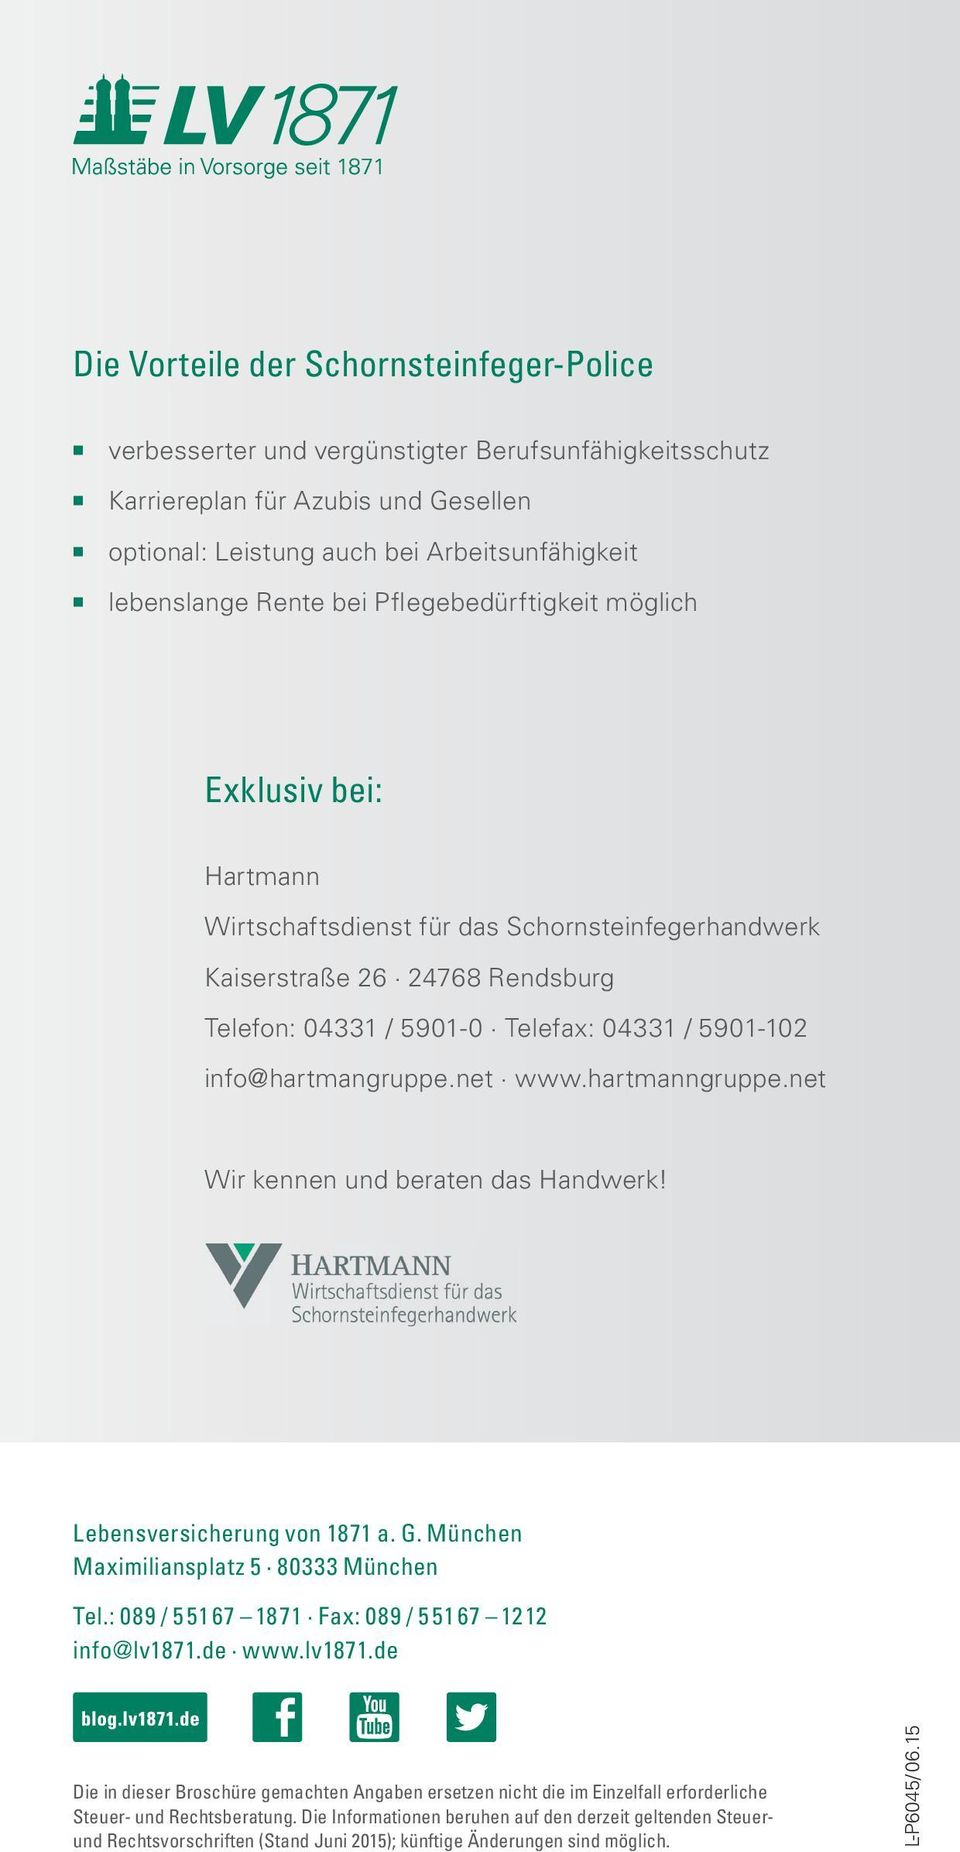 info@hartmangruppe.net www.hartmanngruppe.net Wir kennen und beraten das Handwerk! Lebensversicherung von 1871 a. G. München Maximiliansplatz 5 80333 München Tel.